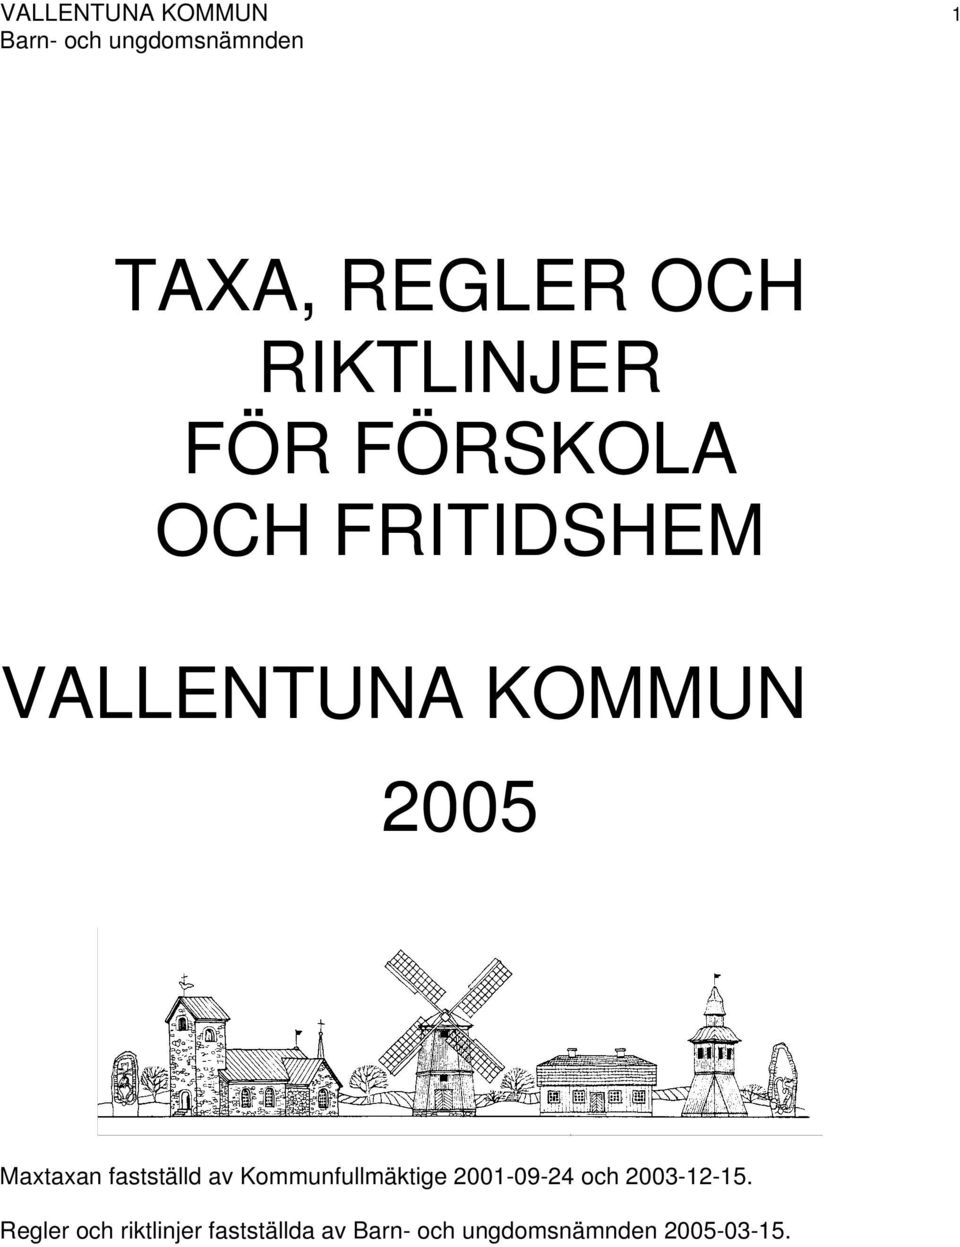 Maxtaxan fastställd av Kommunfullmäktige 2001-09-24